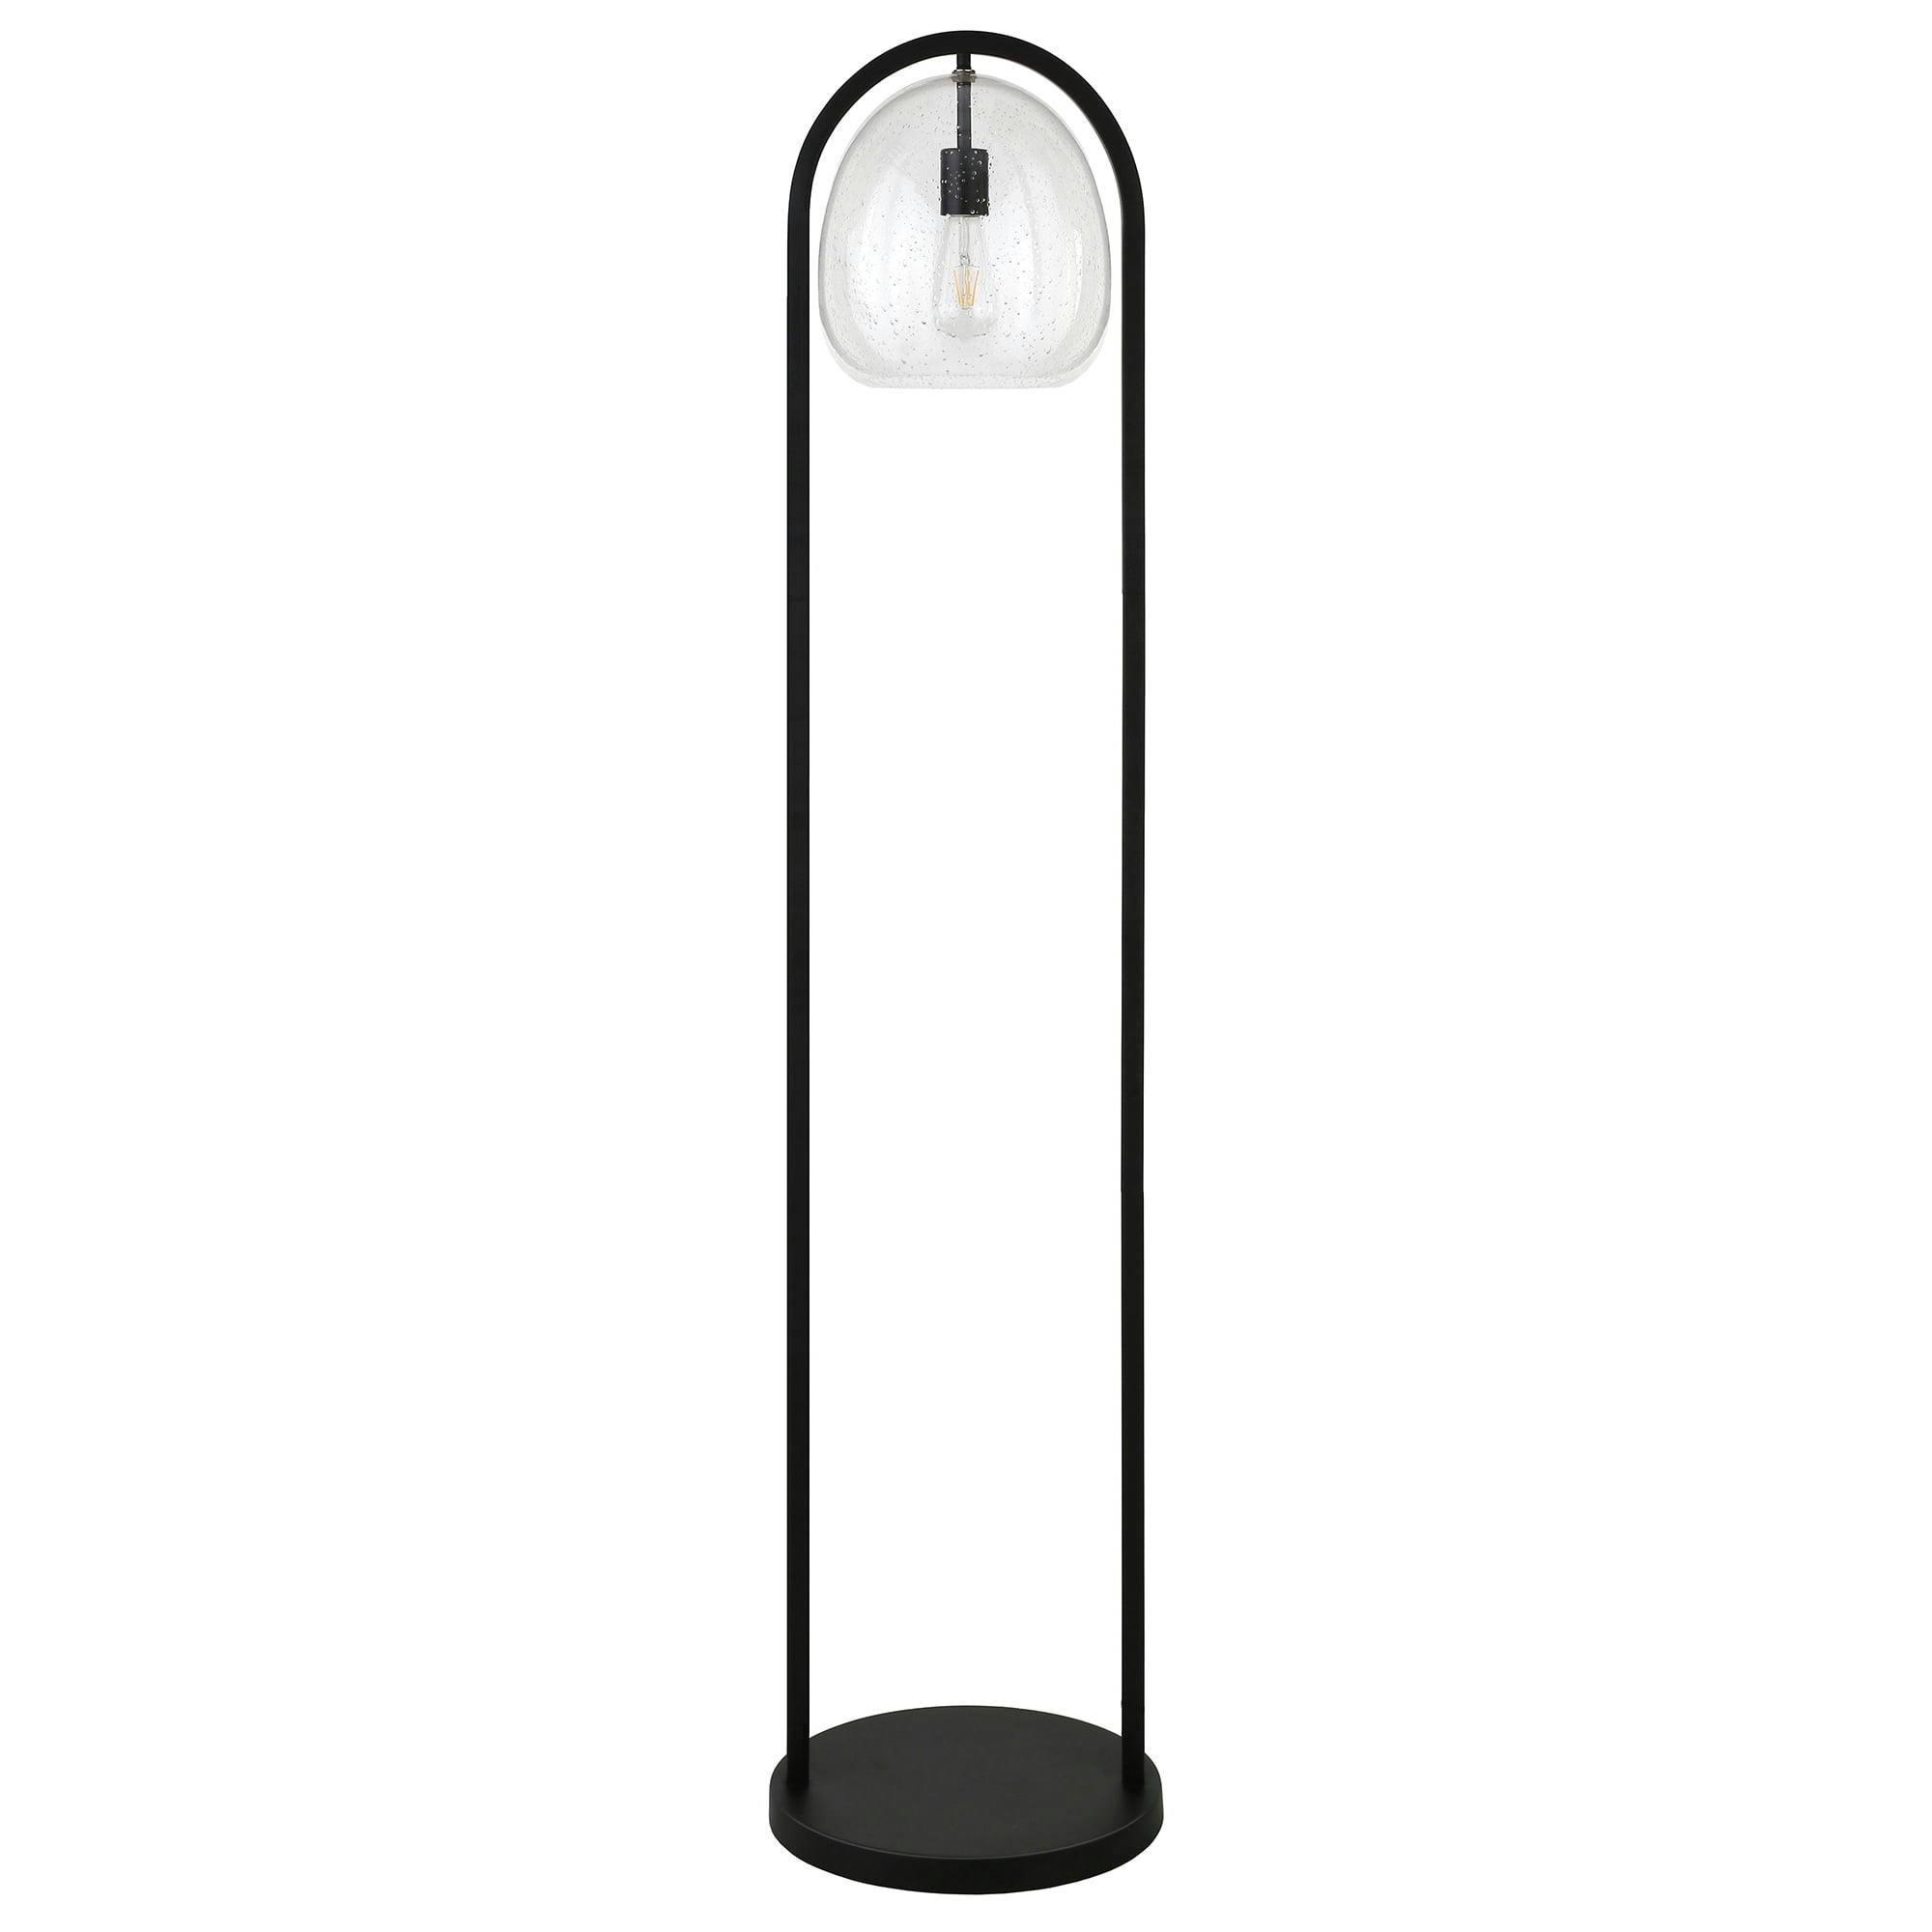 Adjustable Blackened Bronze Seeded Glass Floor Lamp 64.5"